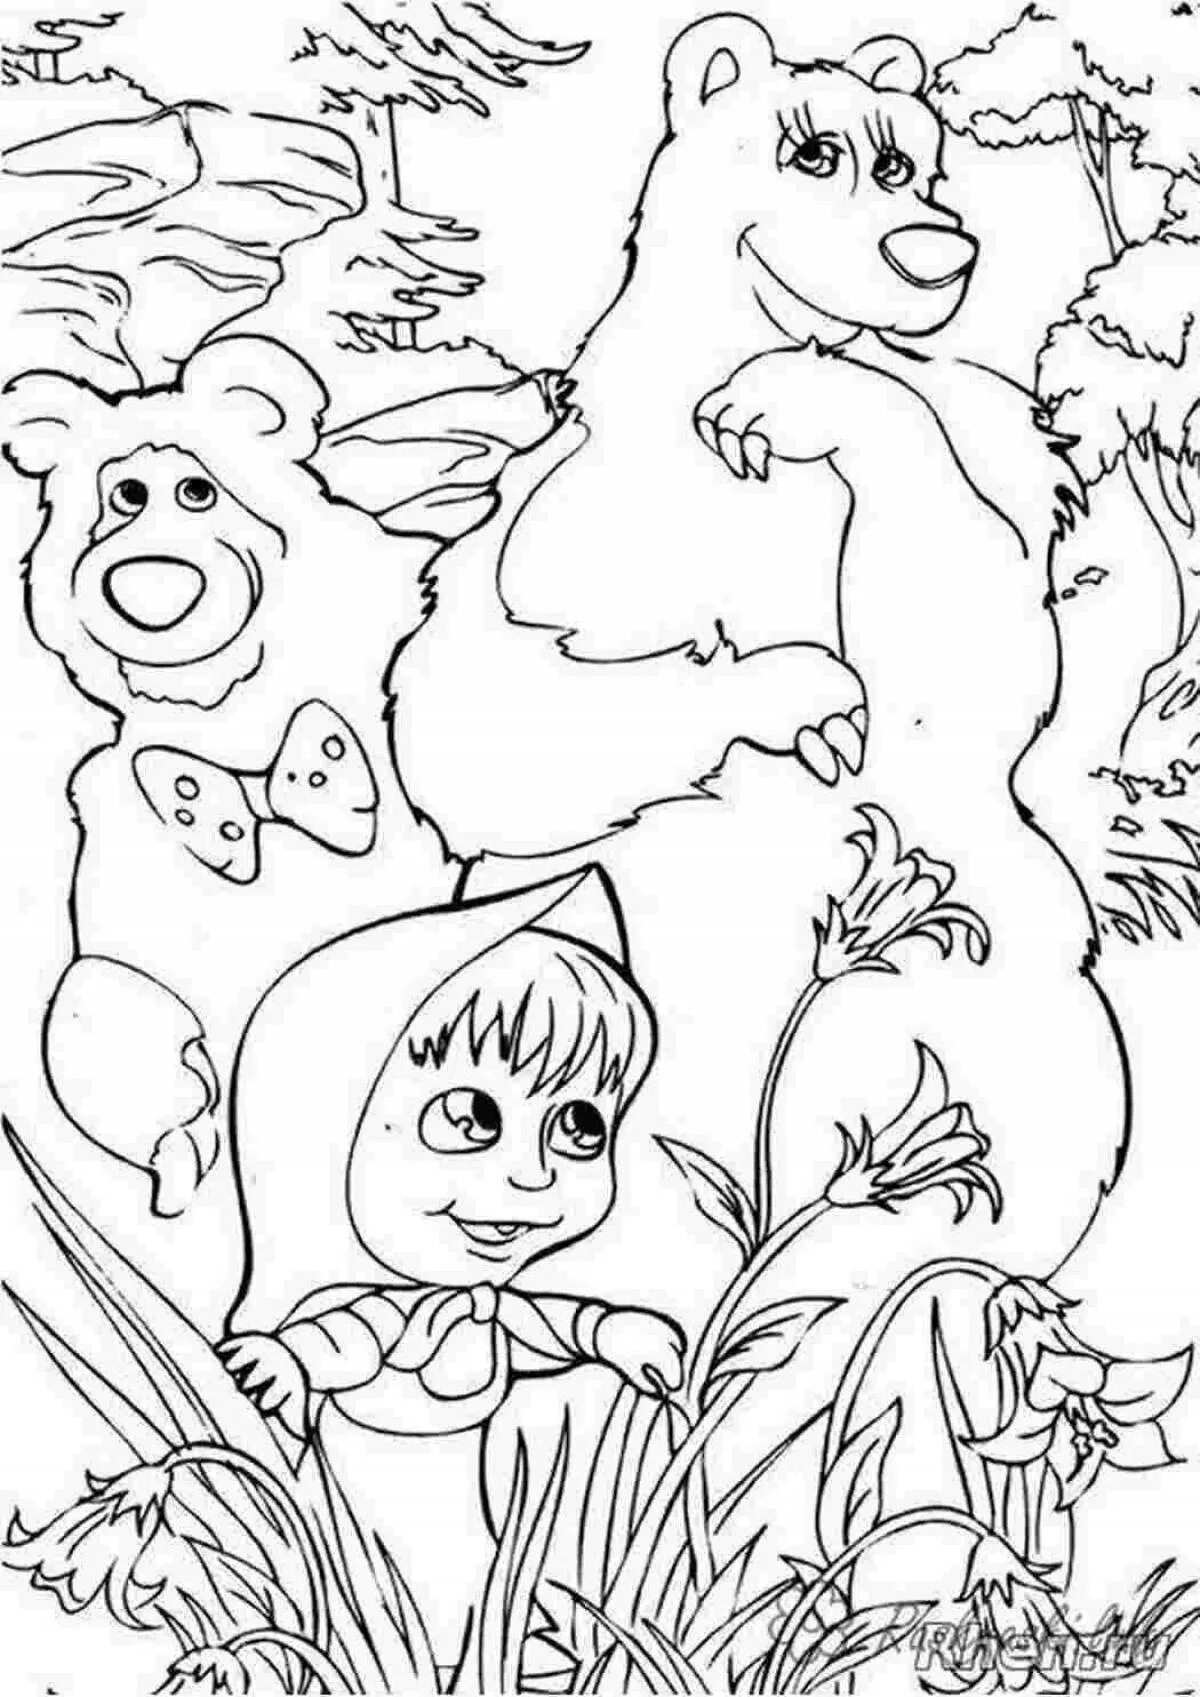 Розмальовки Маша и медведь. Разукрашку Маша и медведь. Раскраски для детей Маша и медведь а4. Разукрашки Маша и медведь Формат а4. Раскраска маша и медведь 2